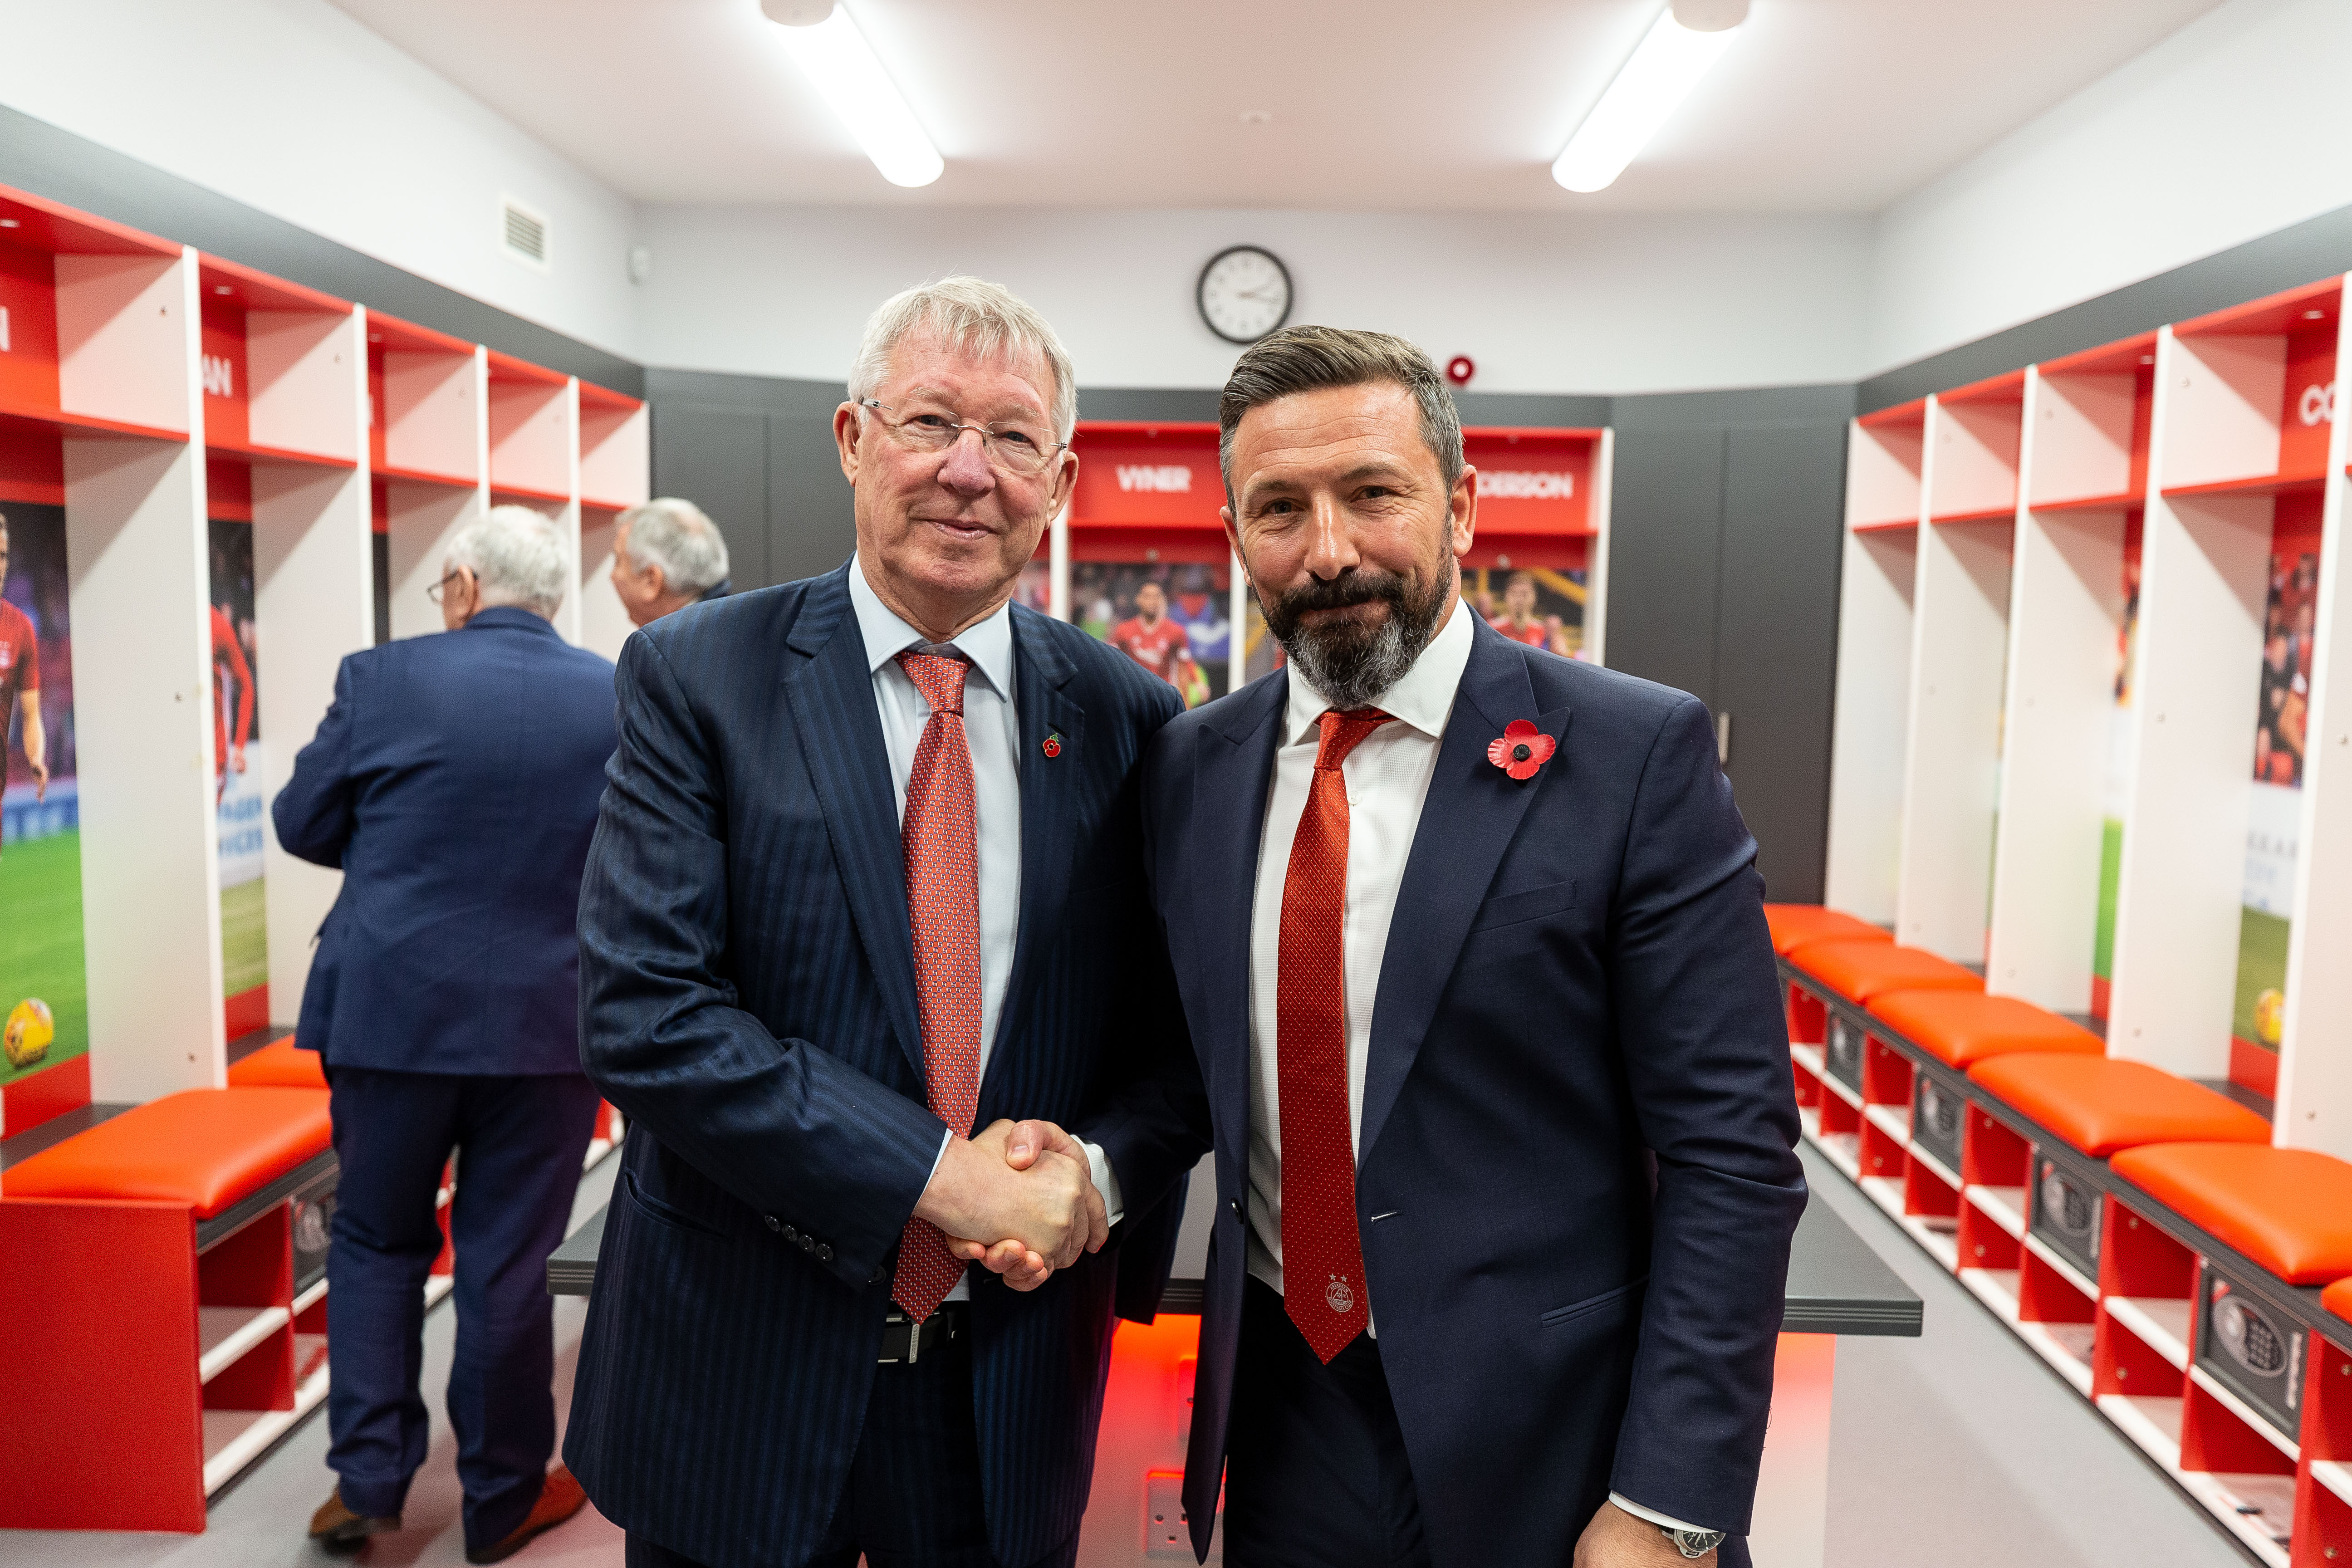 Sir Alex Ferguson officially opens new Aberdeen FC training facilities